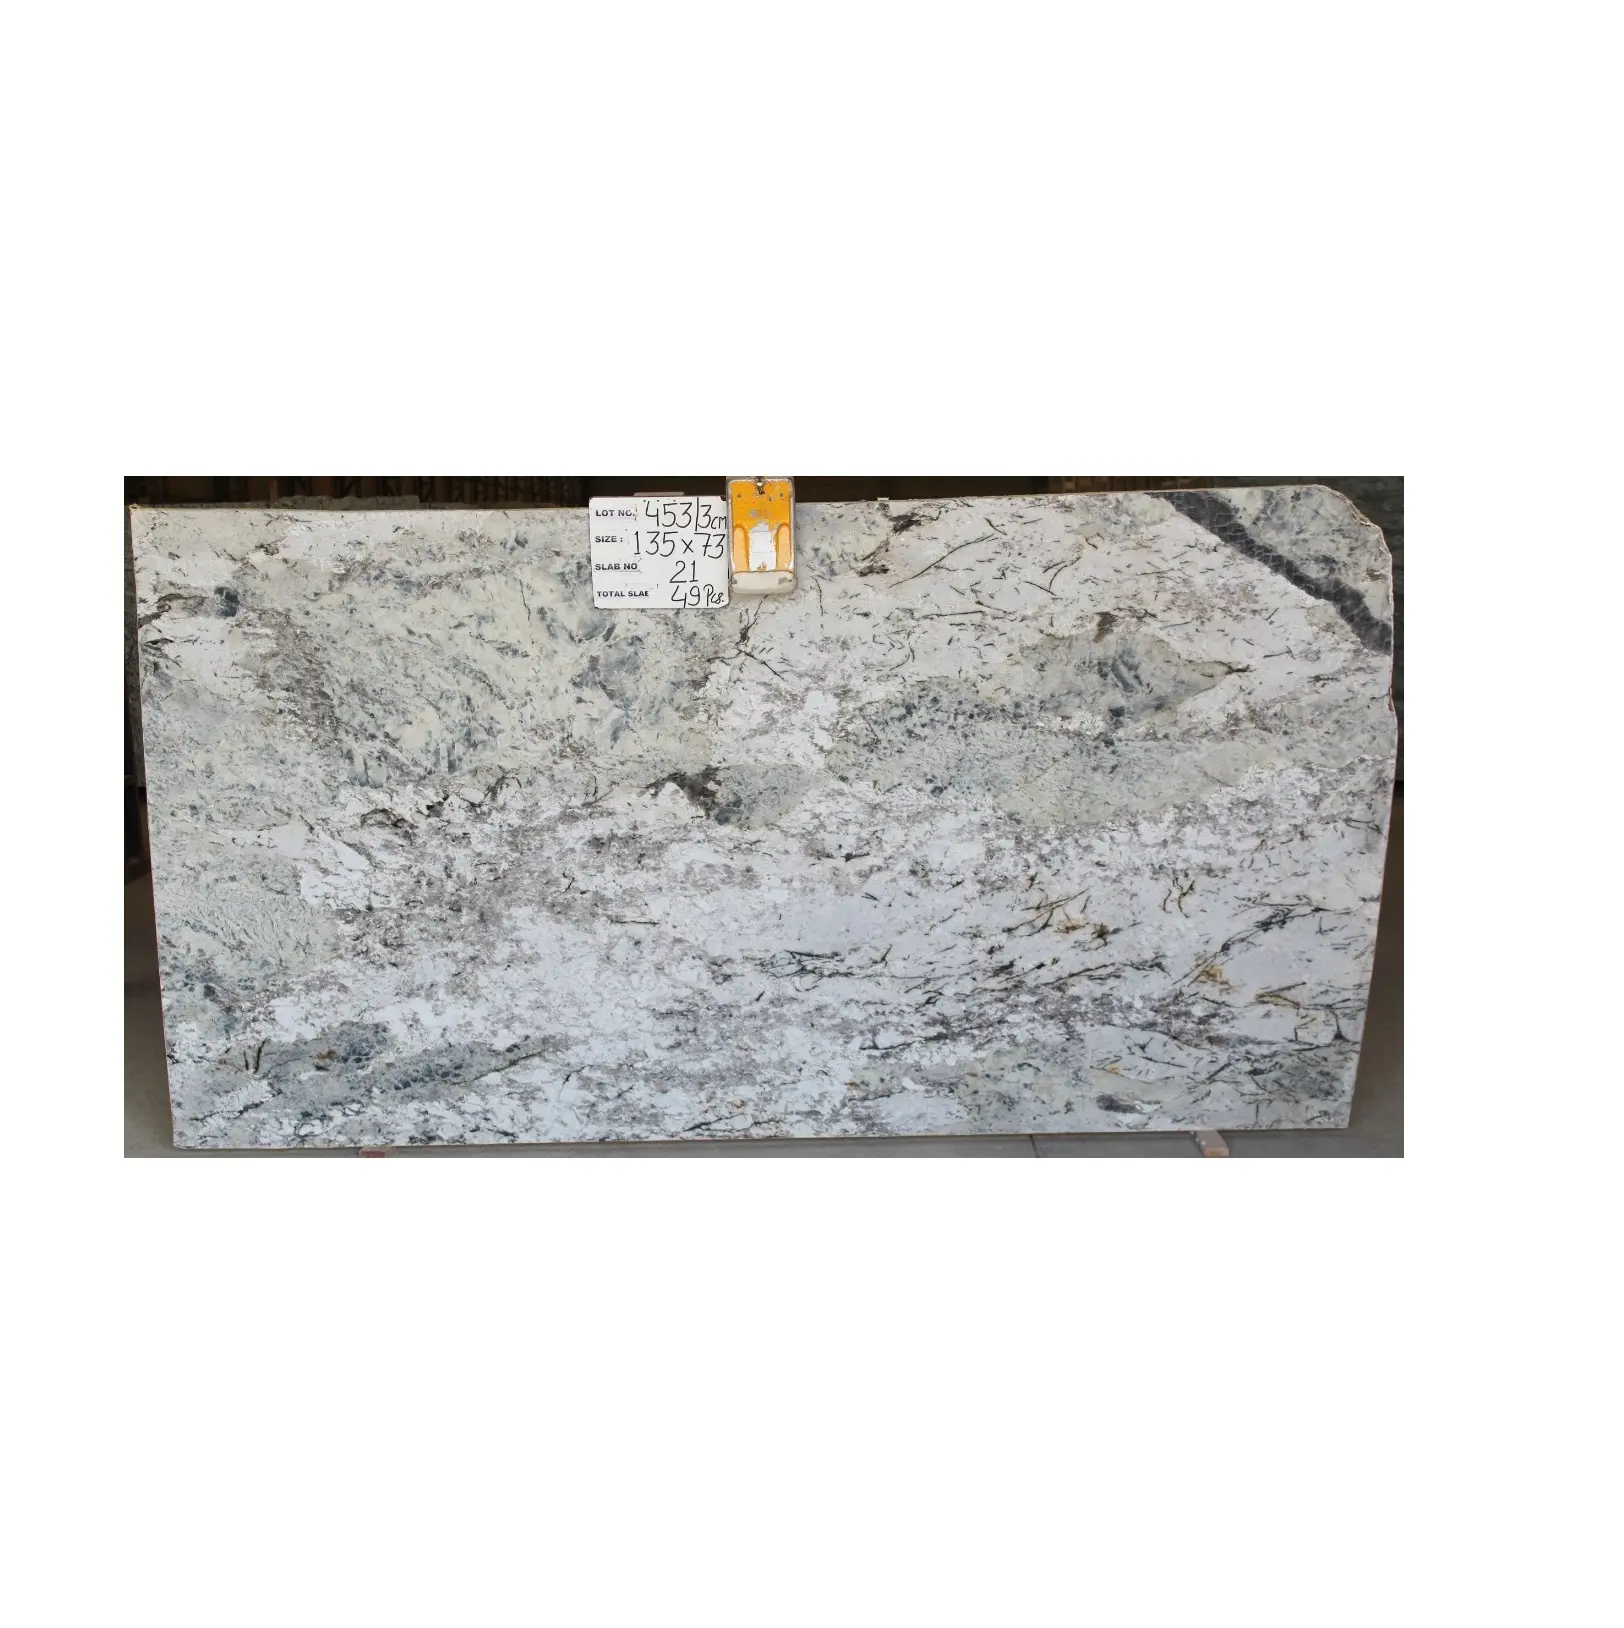 แผ่นหินแกรนิตสีขาวงดงามใช้สำหรับตกแต่งผนังห้องน้ำและพื้นเตาผิง